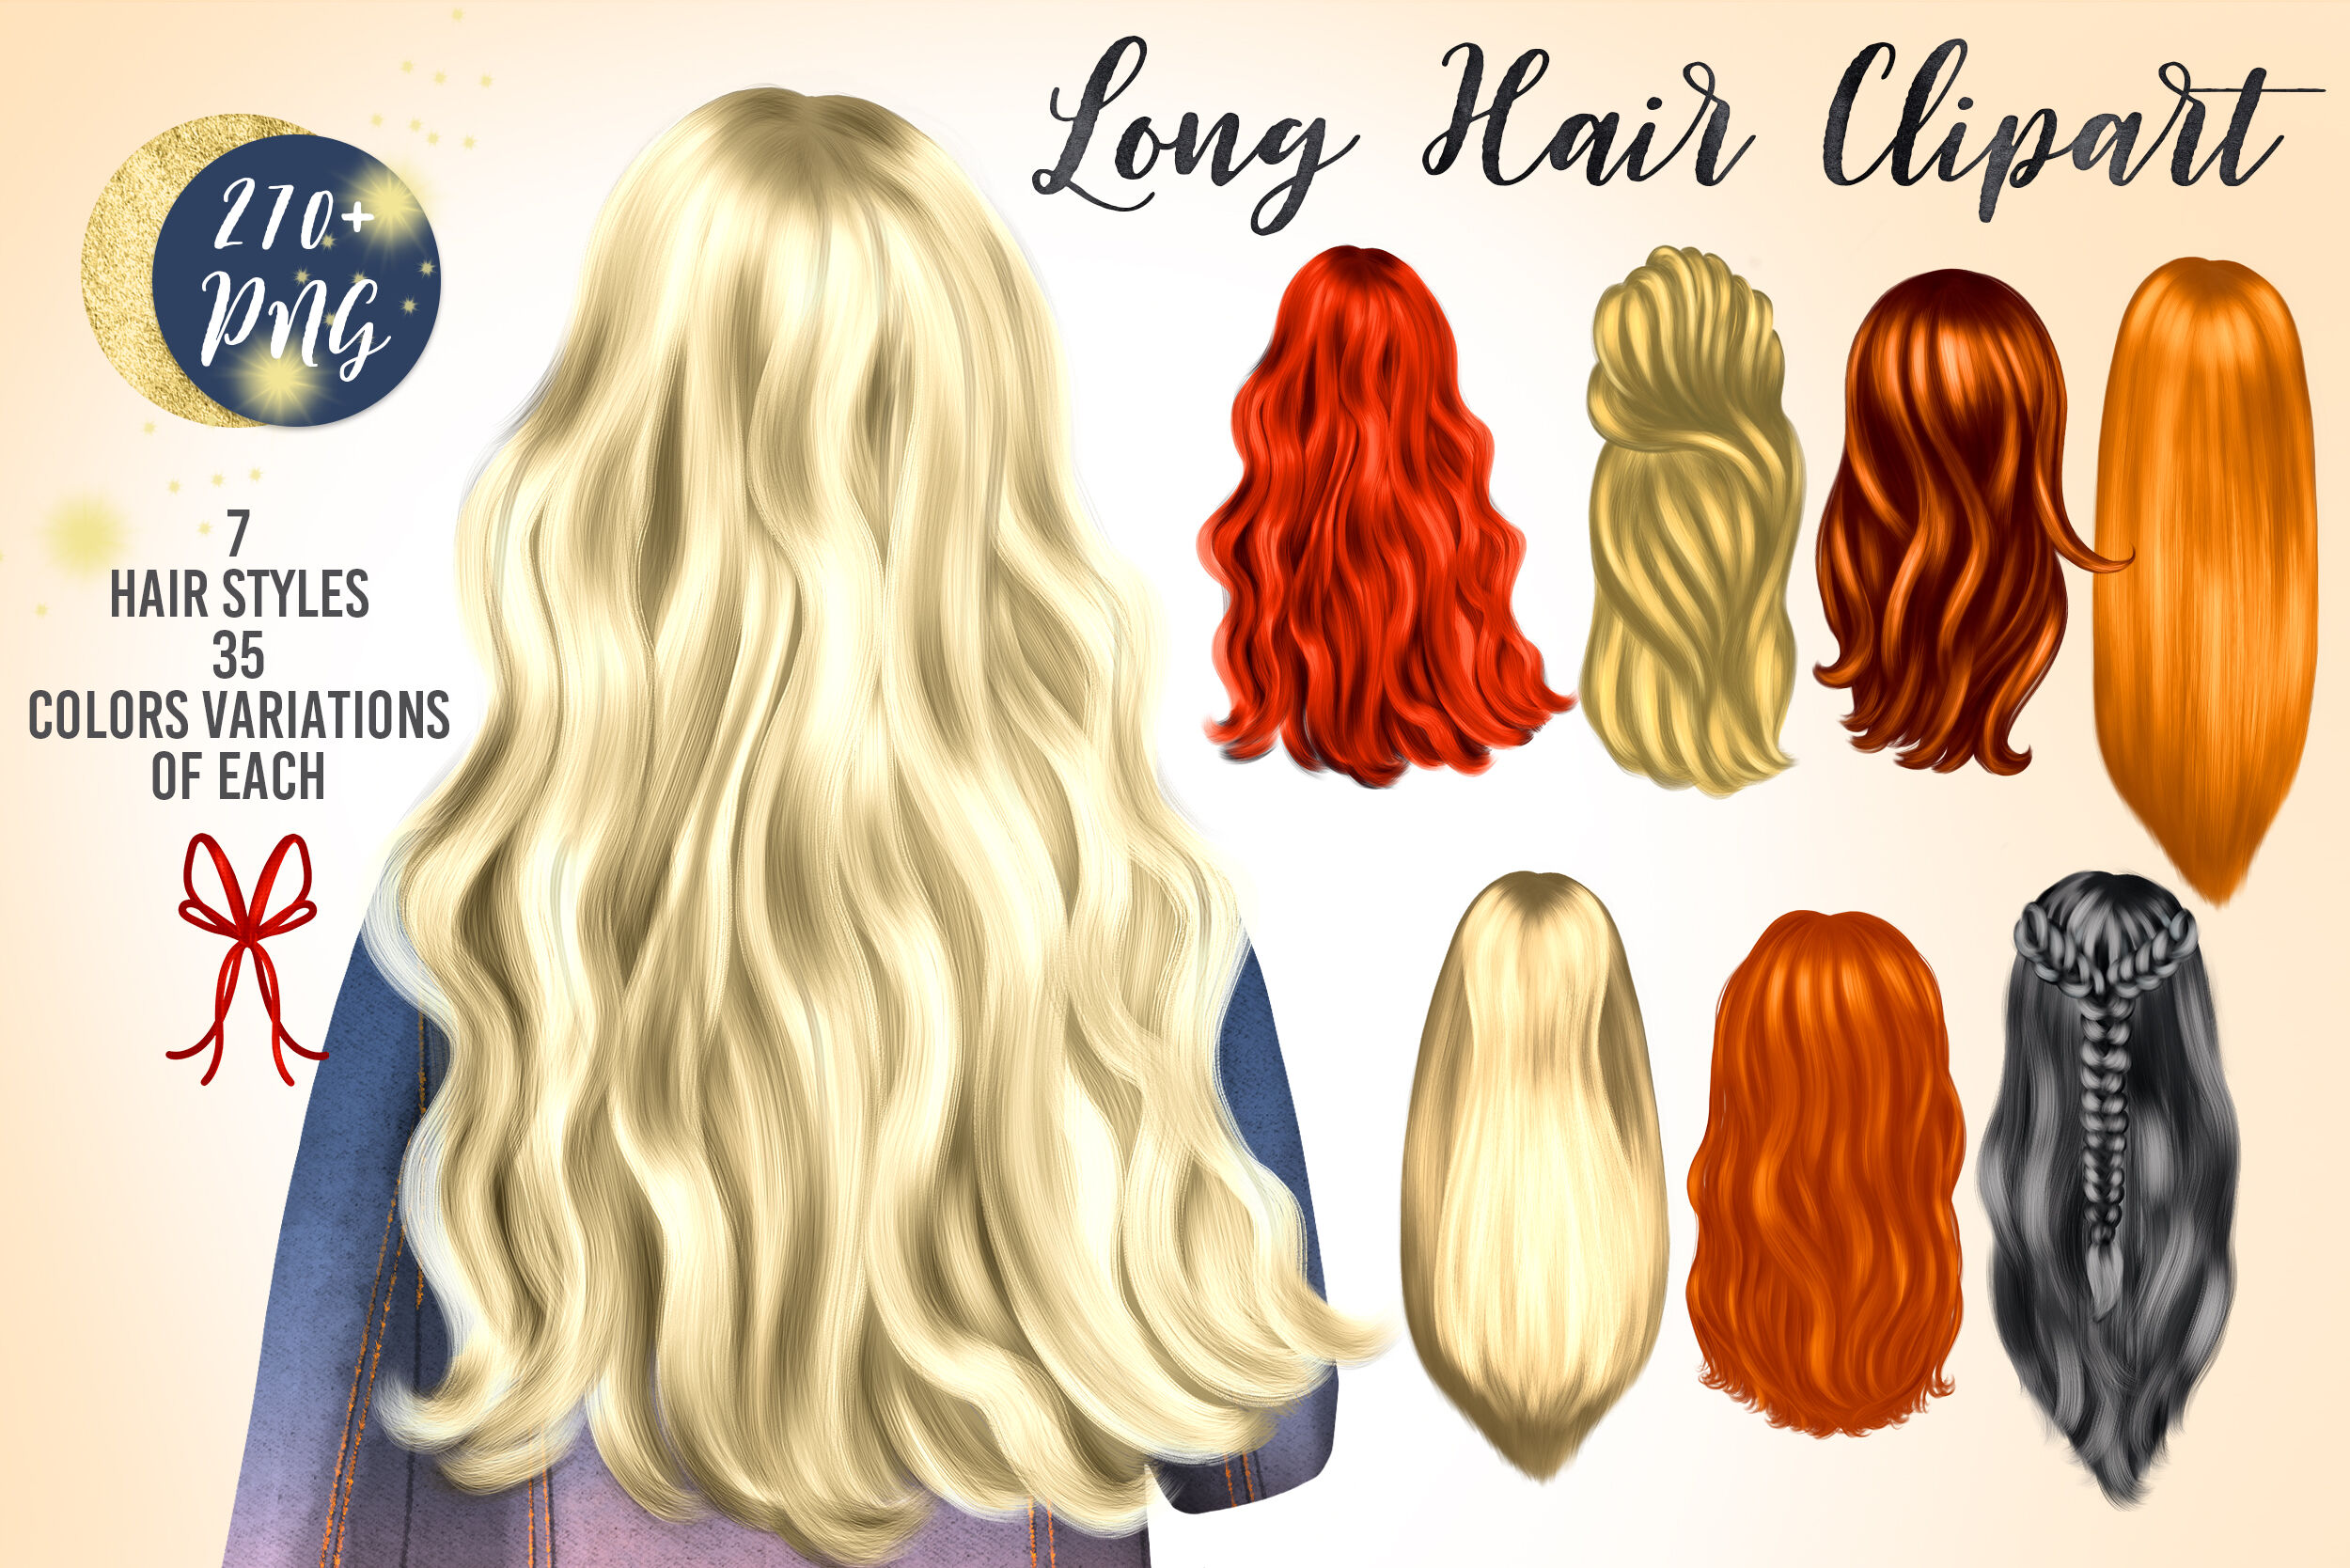 long golden hair clipart